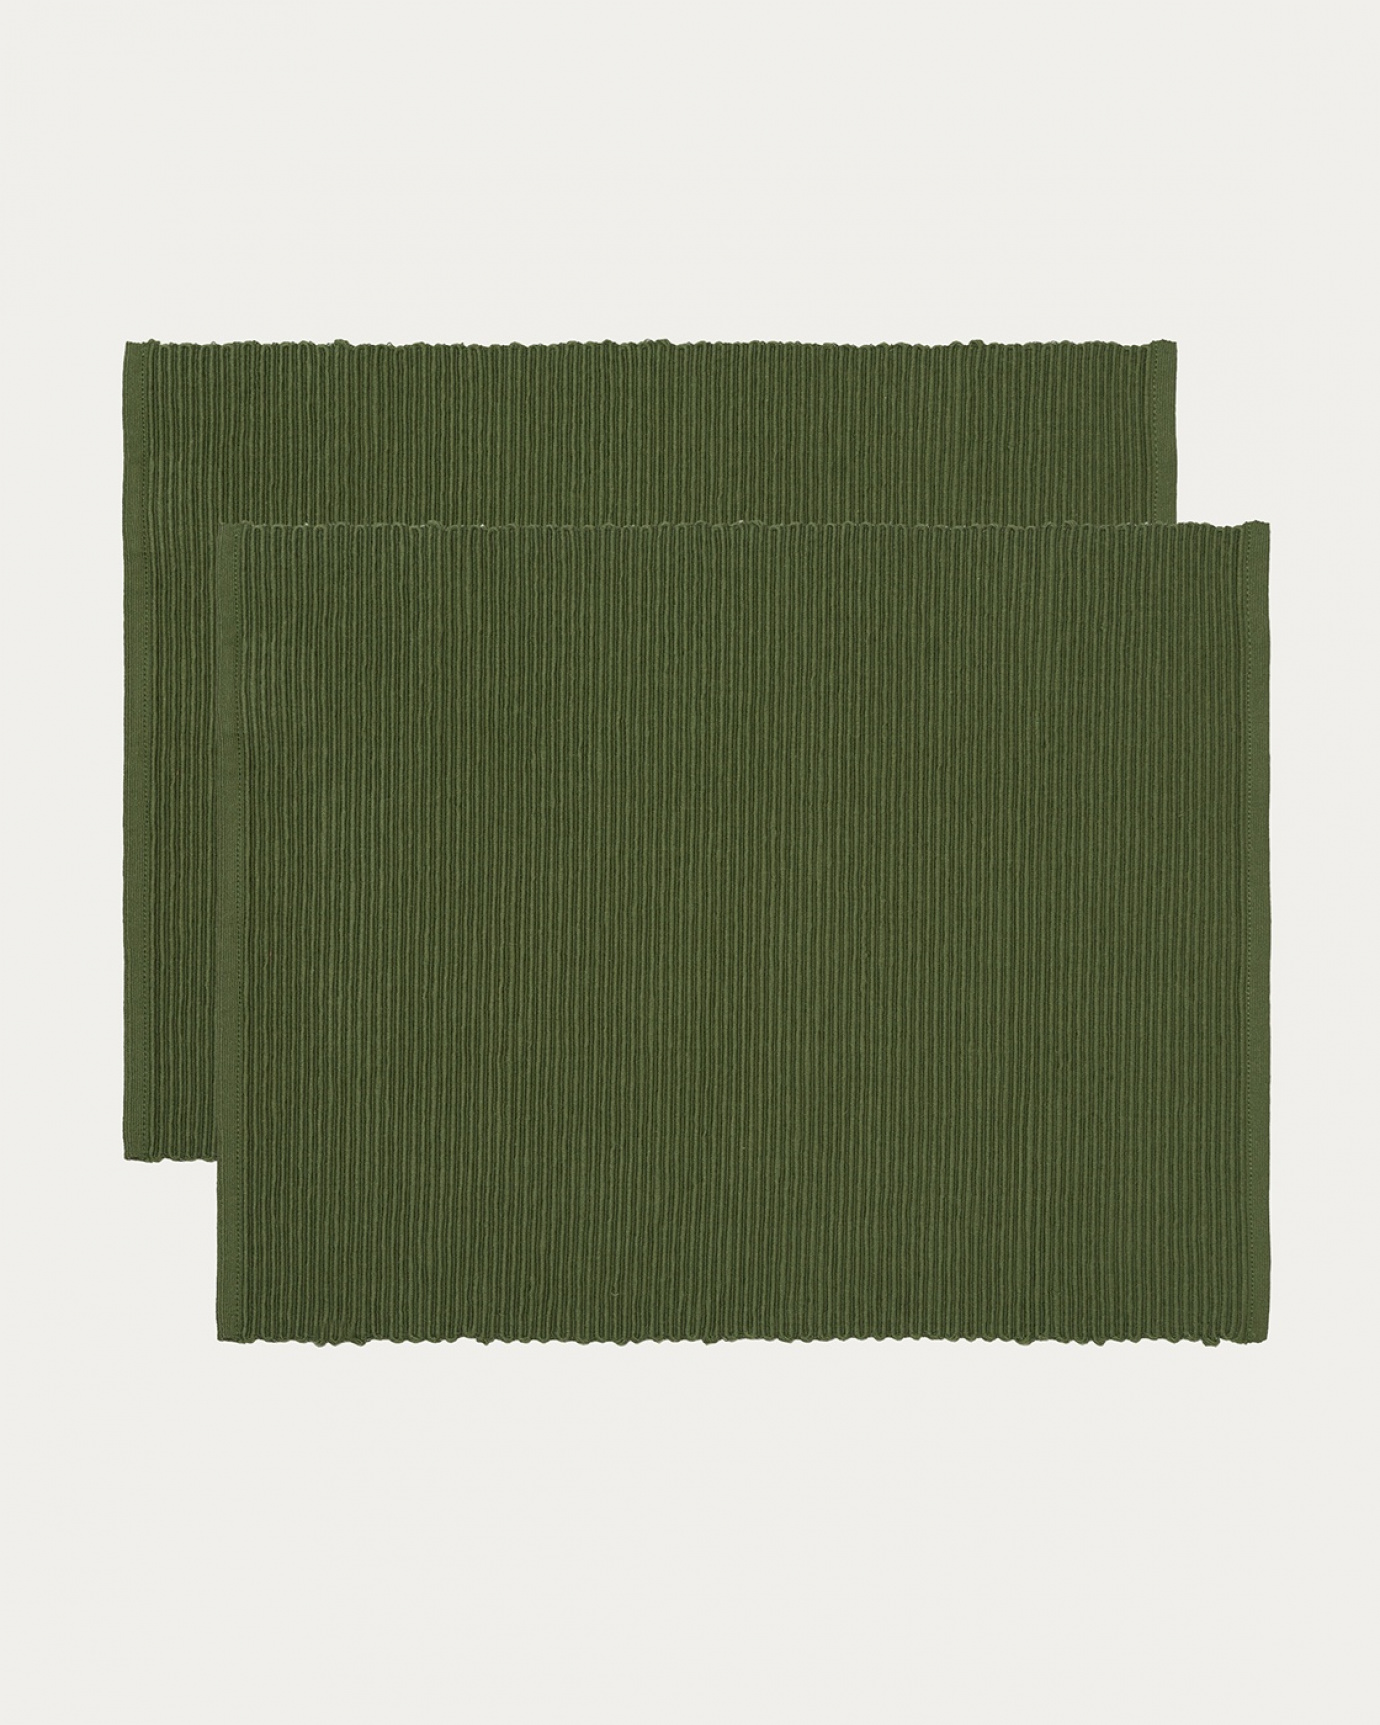 Produktbild dunkles olivgrün UNI Tischset aus weicher Baumwolle in Rippenqualität von LINUM DESIGN. Größe 35x46 cm und in 2er-Pack verkauft.